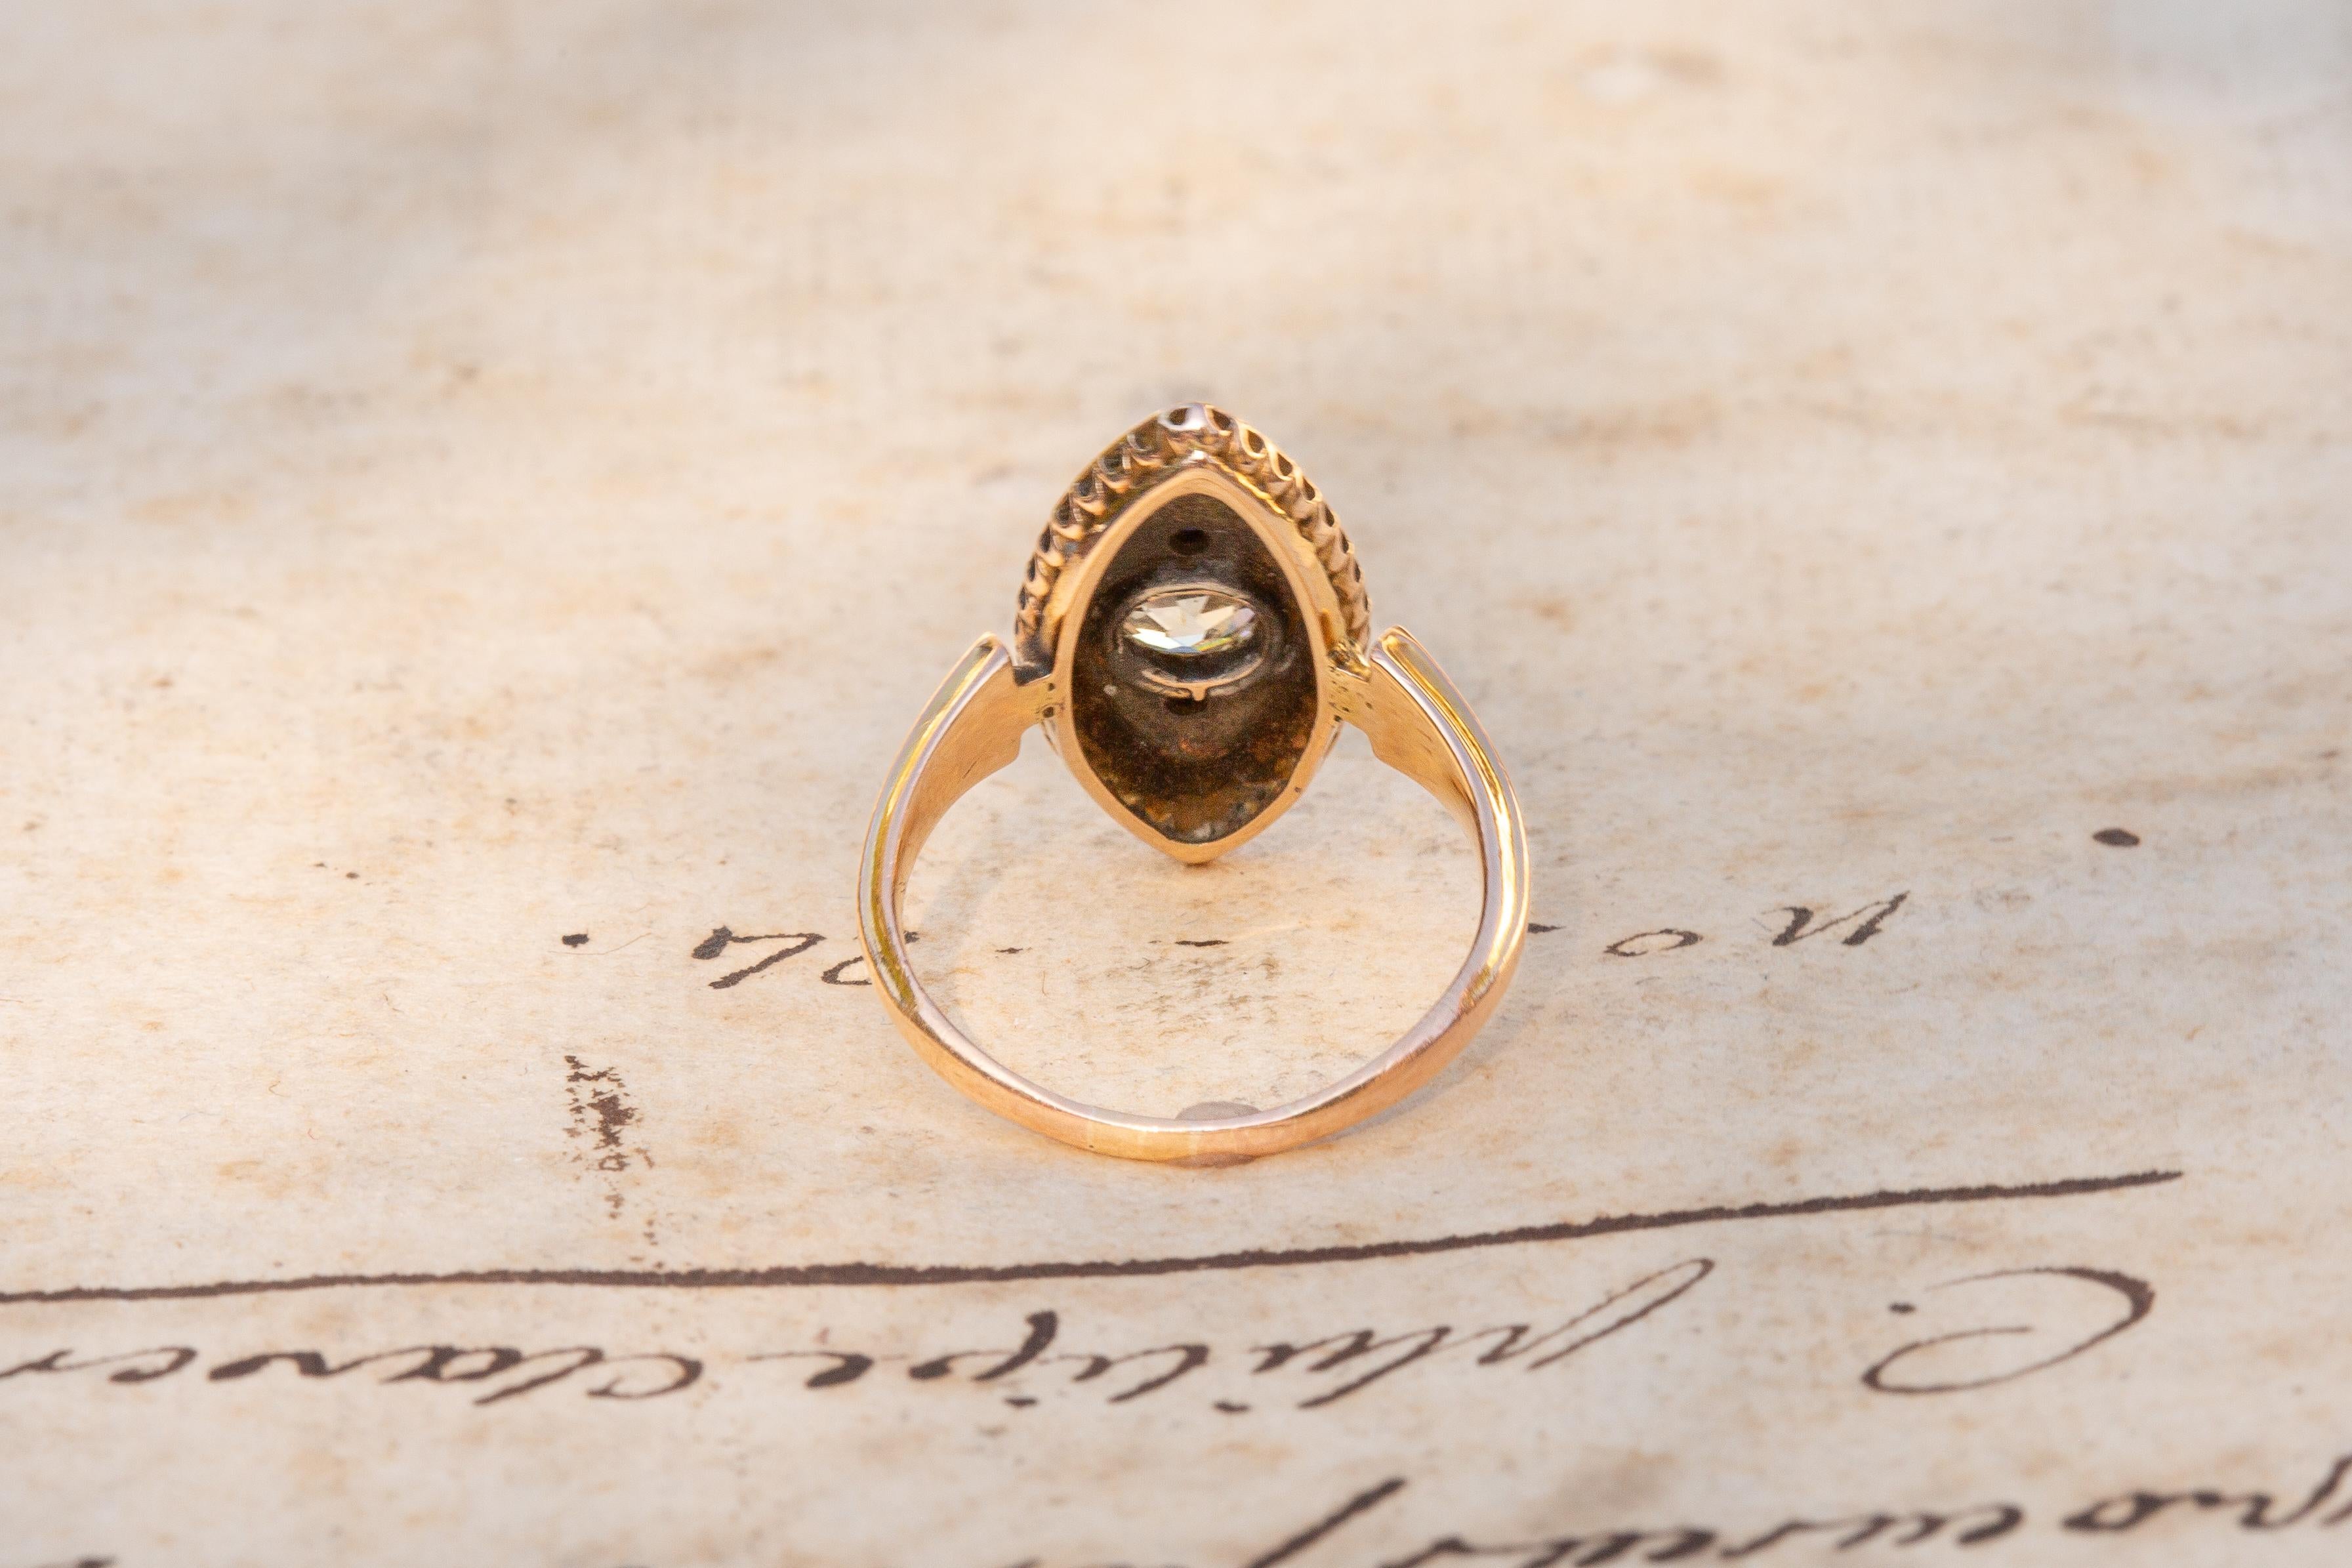 marie antoinette's wedding ring